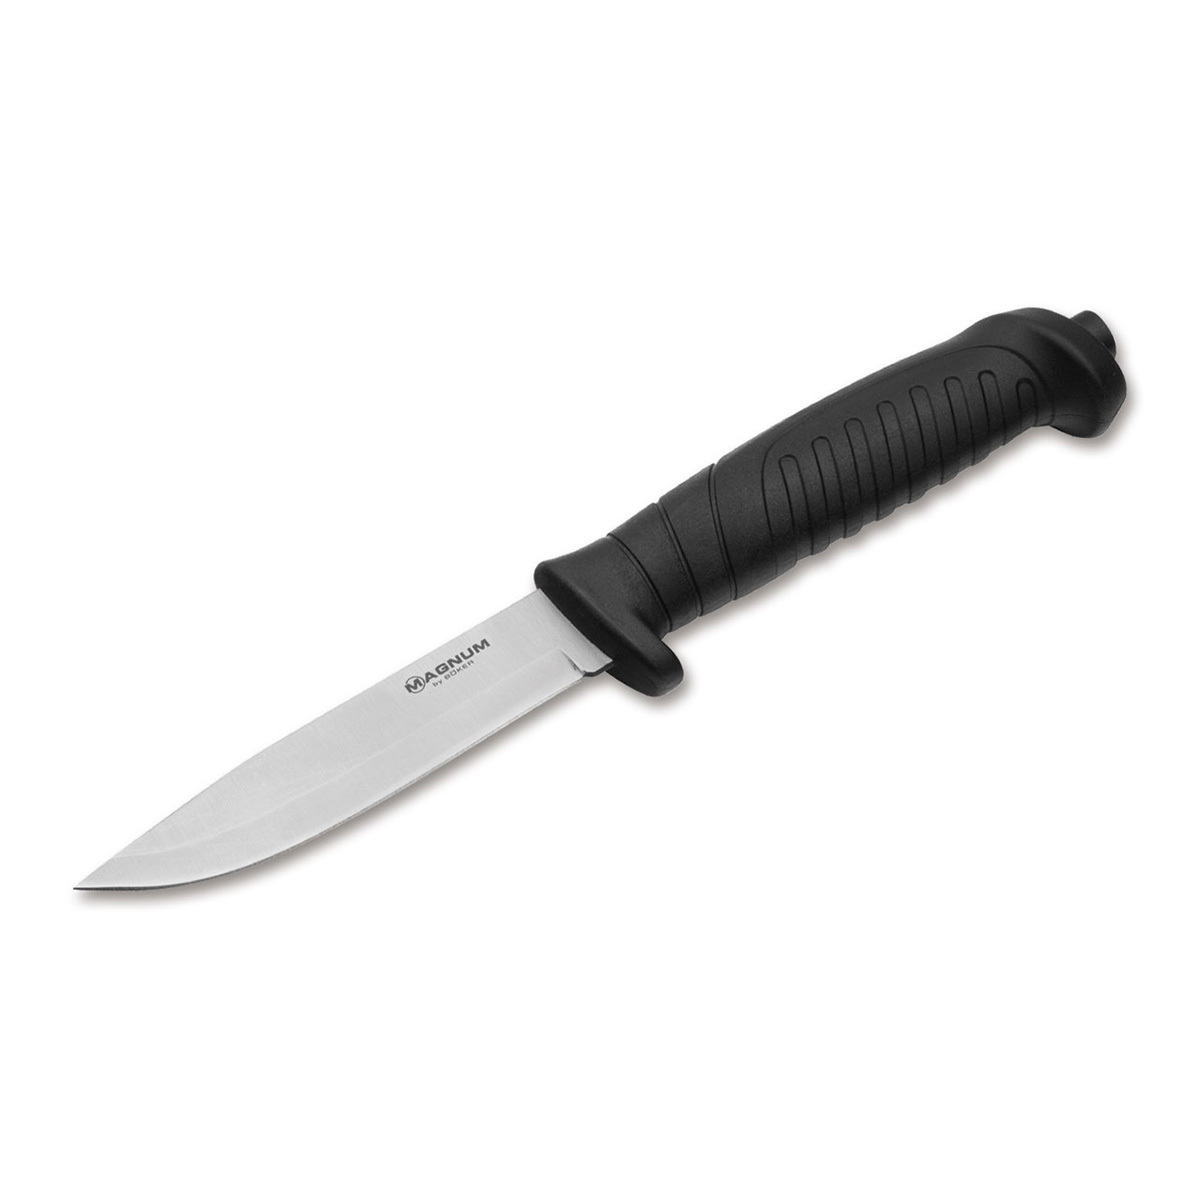 Нож с фиксированным клинком Boker Knivgar Black, сталь 420A, рукоять пластик нож с фиксированным клинком ontario rd4 micarta серрейтор